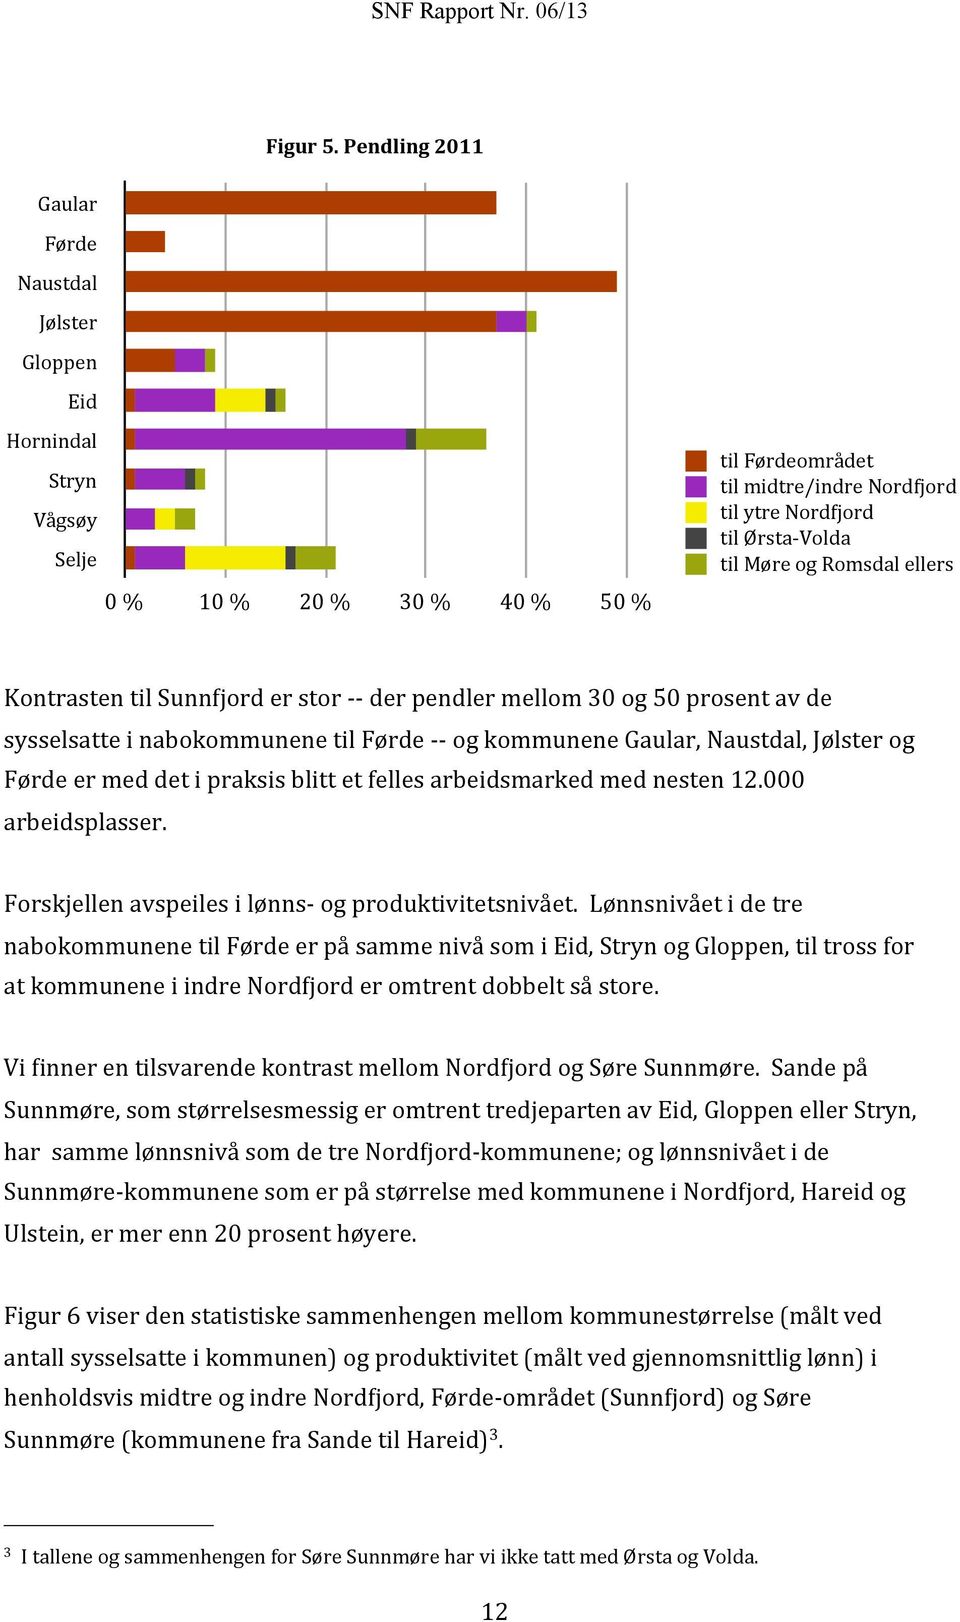 Møre og Romsdal ellers Kontrasten til Sunn(jord er stor - - der pendler mellom 30 og 50 prosent av de sysselsatte i nabokommunene til Førde - - og kommunene Gaular, Naustdal, Jølster og Førde er med